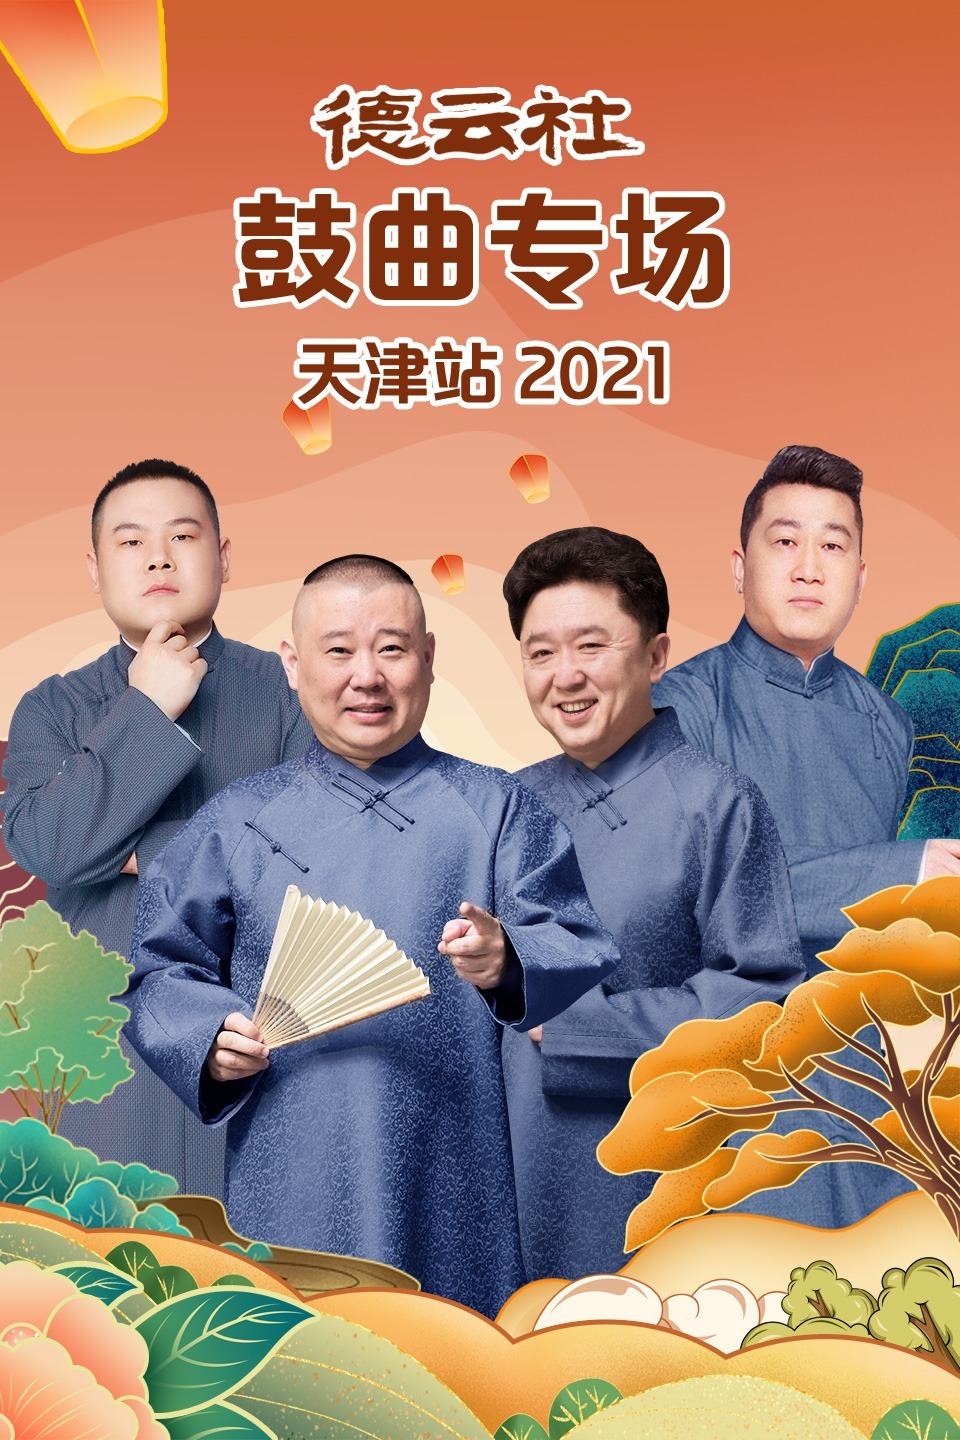 德云社鼓曲专场天津站2021